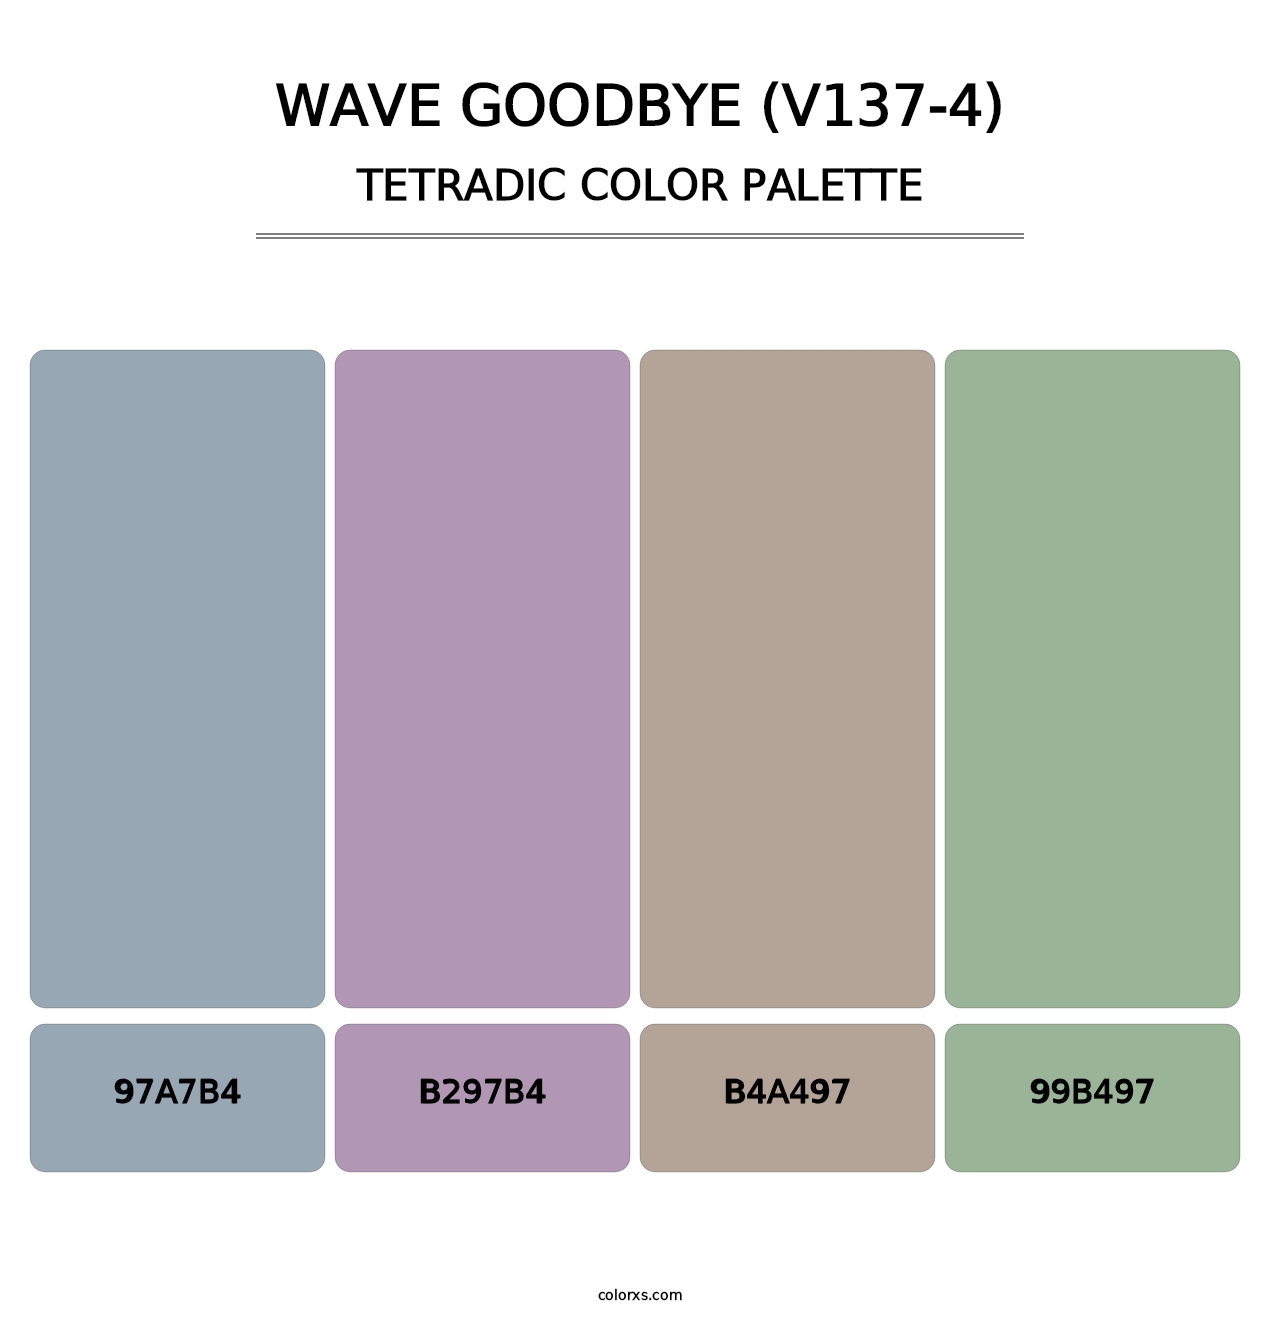 Wave Goodbye (V137-4) - Tetradic Color Palette